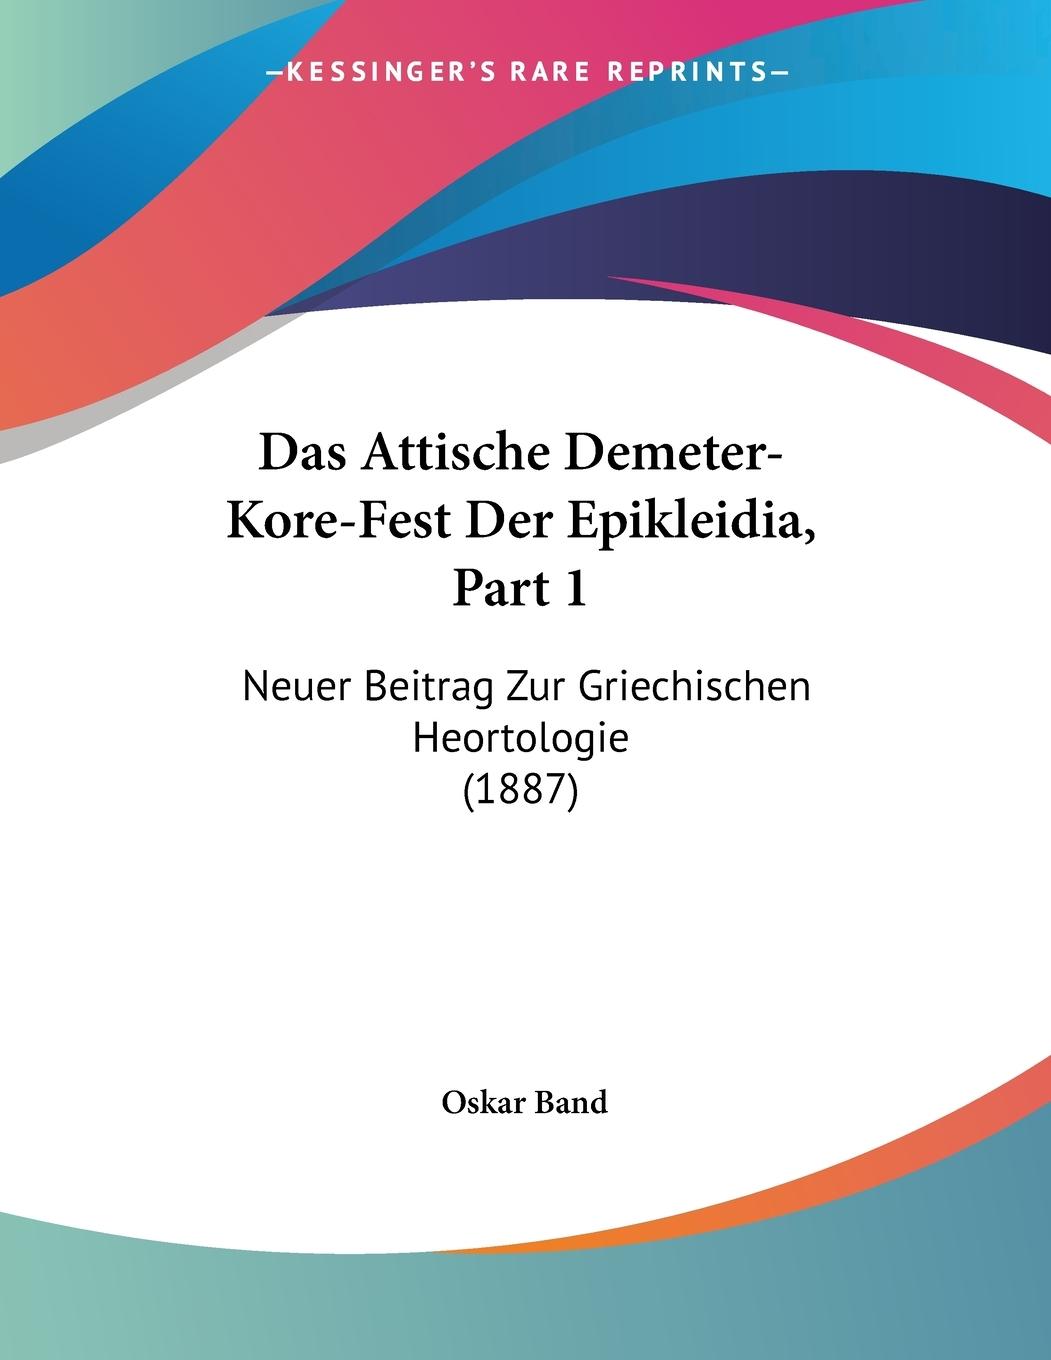 Das Attische Demeter-Kore-Fest Der Epikleidia, Part 1 - Band, Oskar